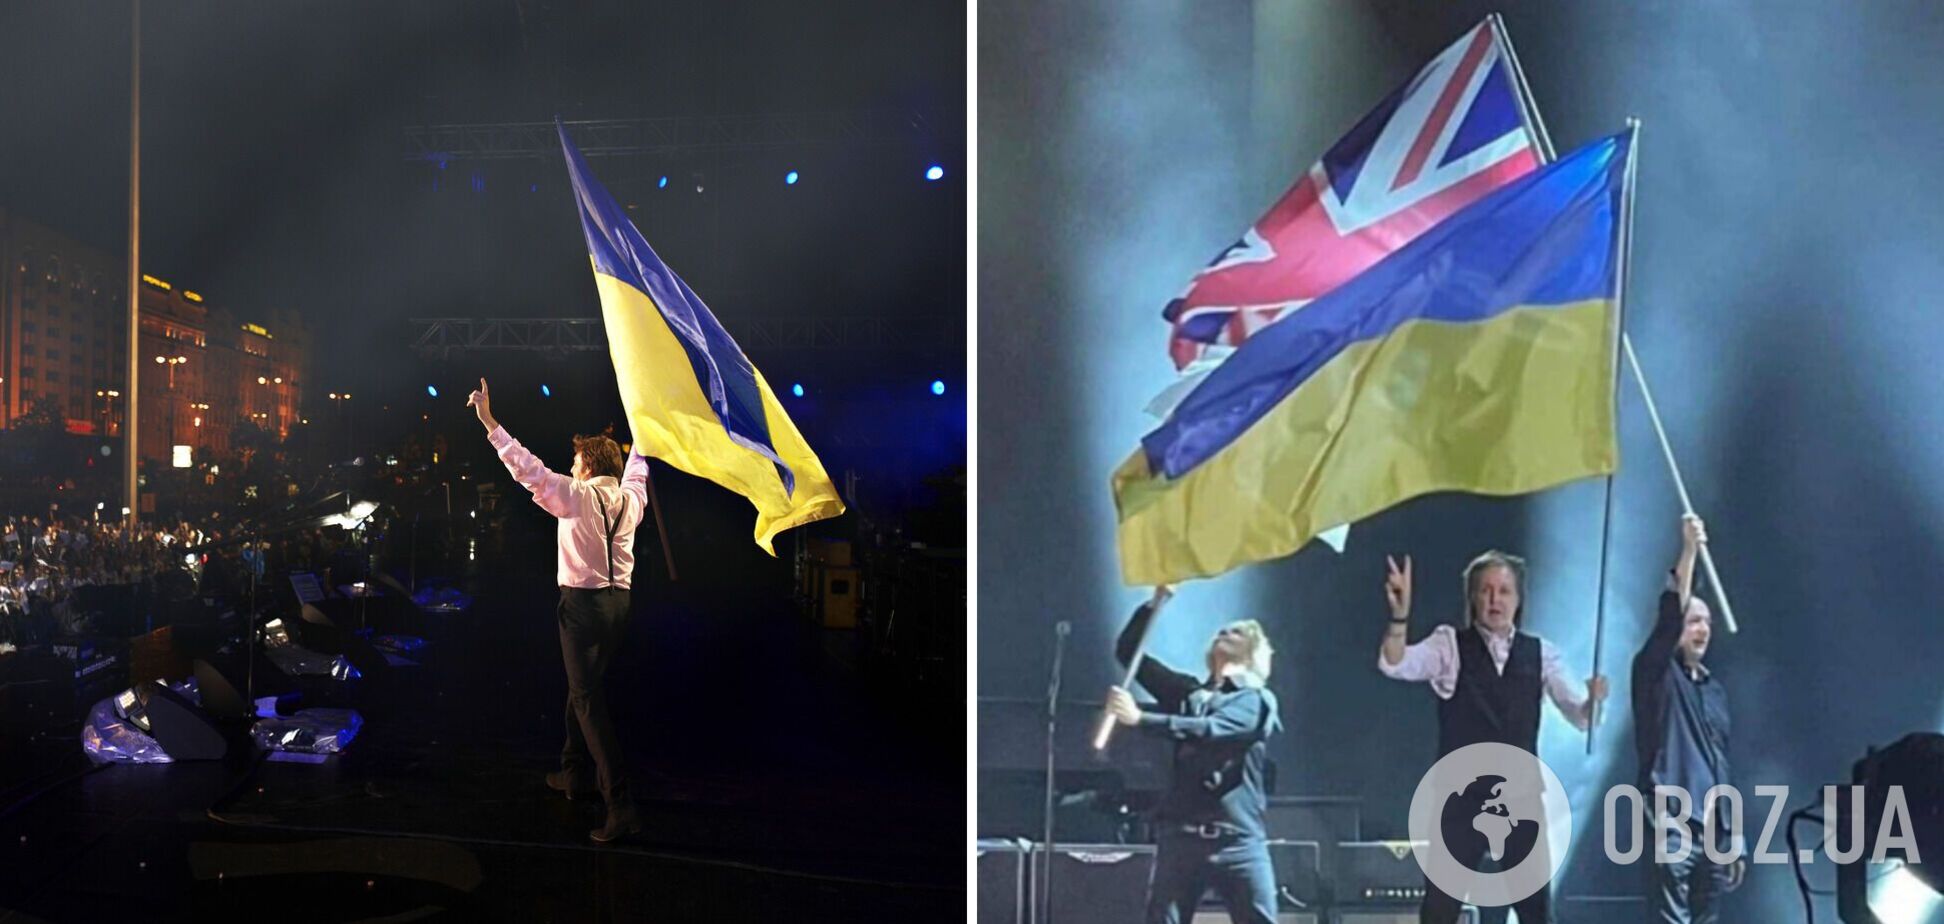 Пол Маккартни вышел на сцену в Бостоне с огромным флагом Украины и сорвал громкие аплодисменты